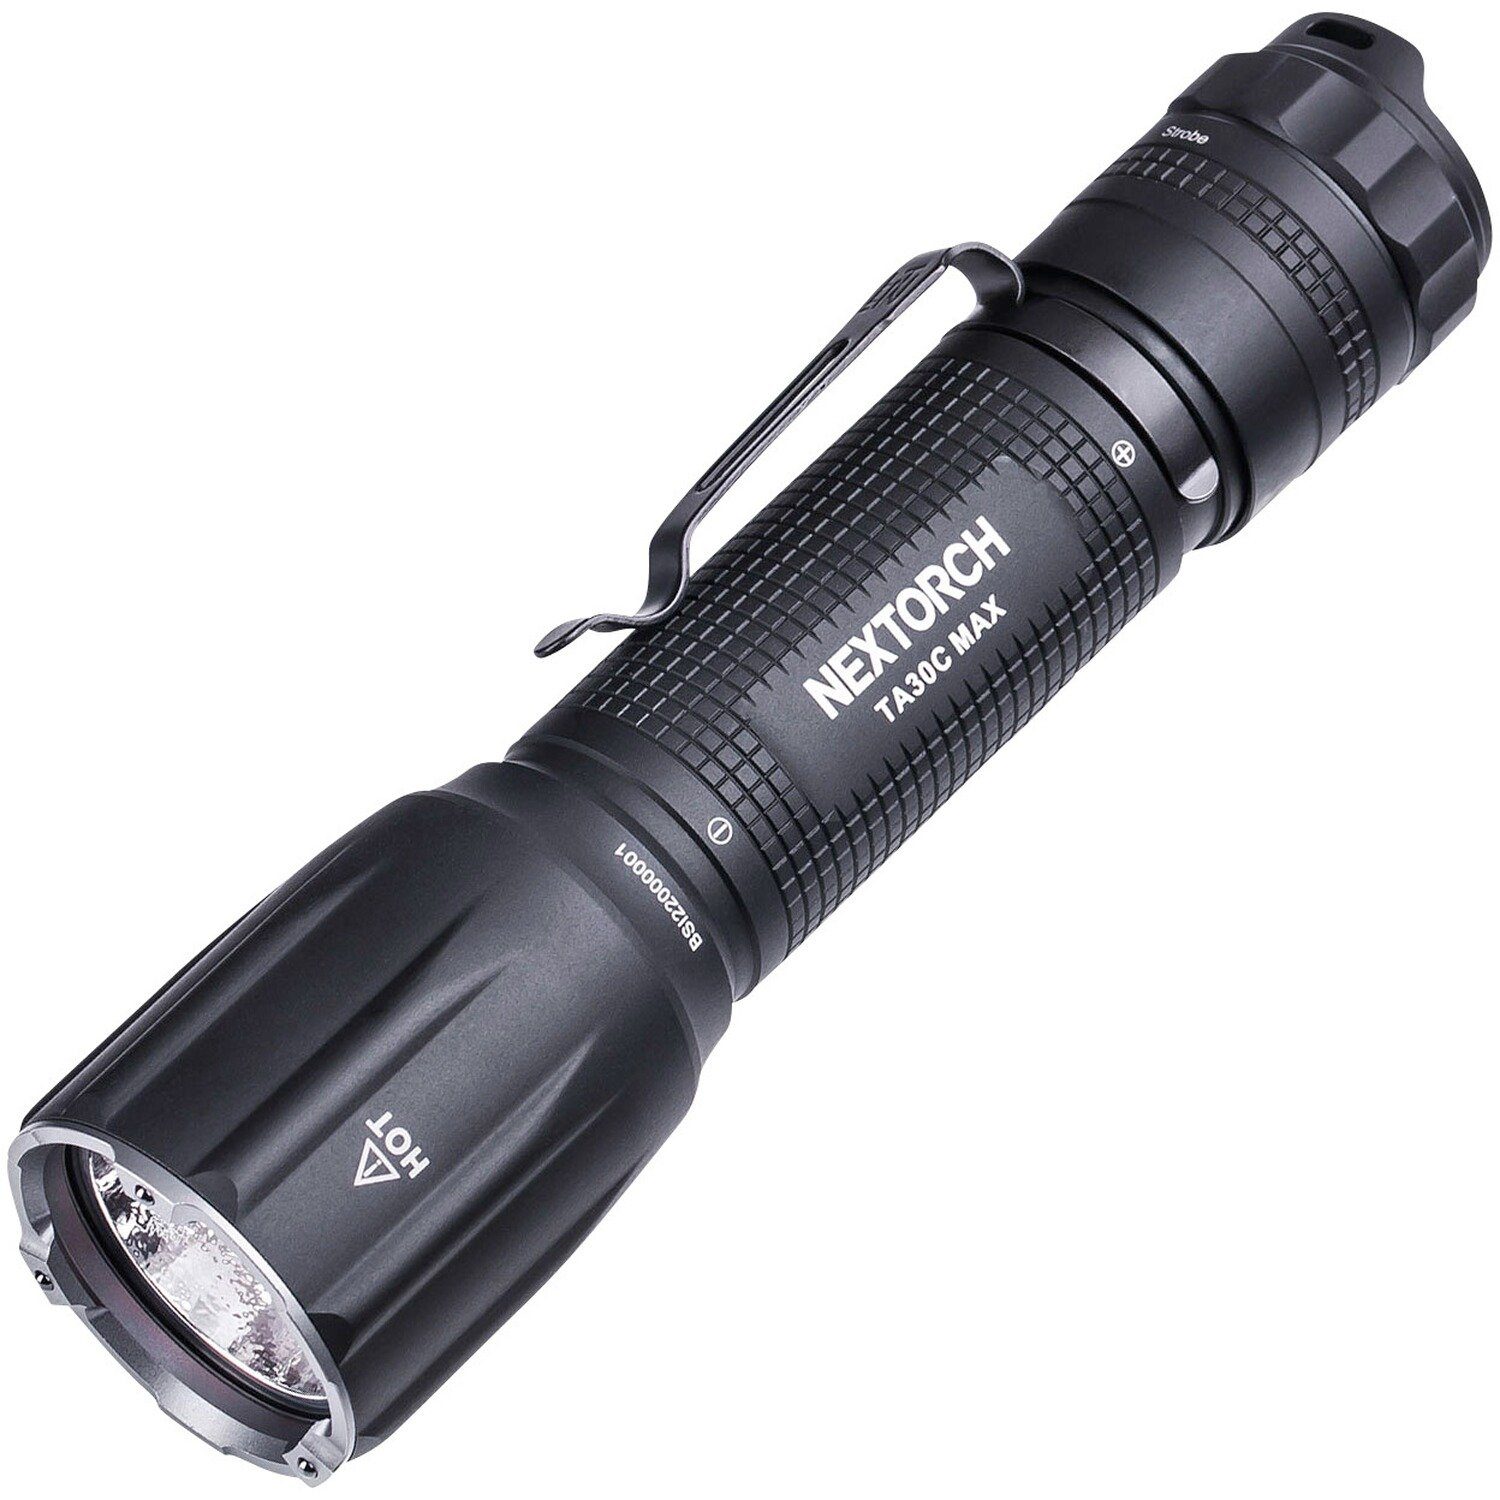 Lampe Nextorch MAX TA30C Taschenlampe